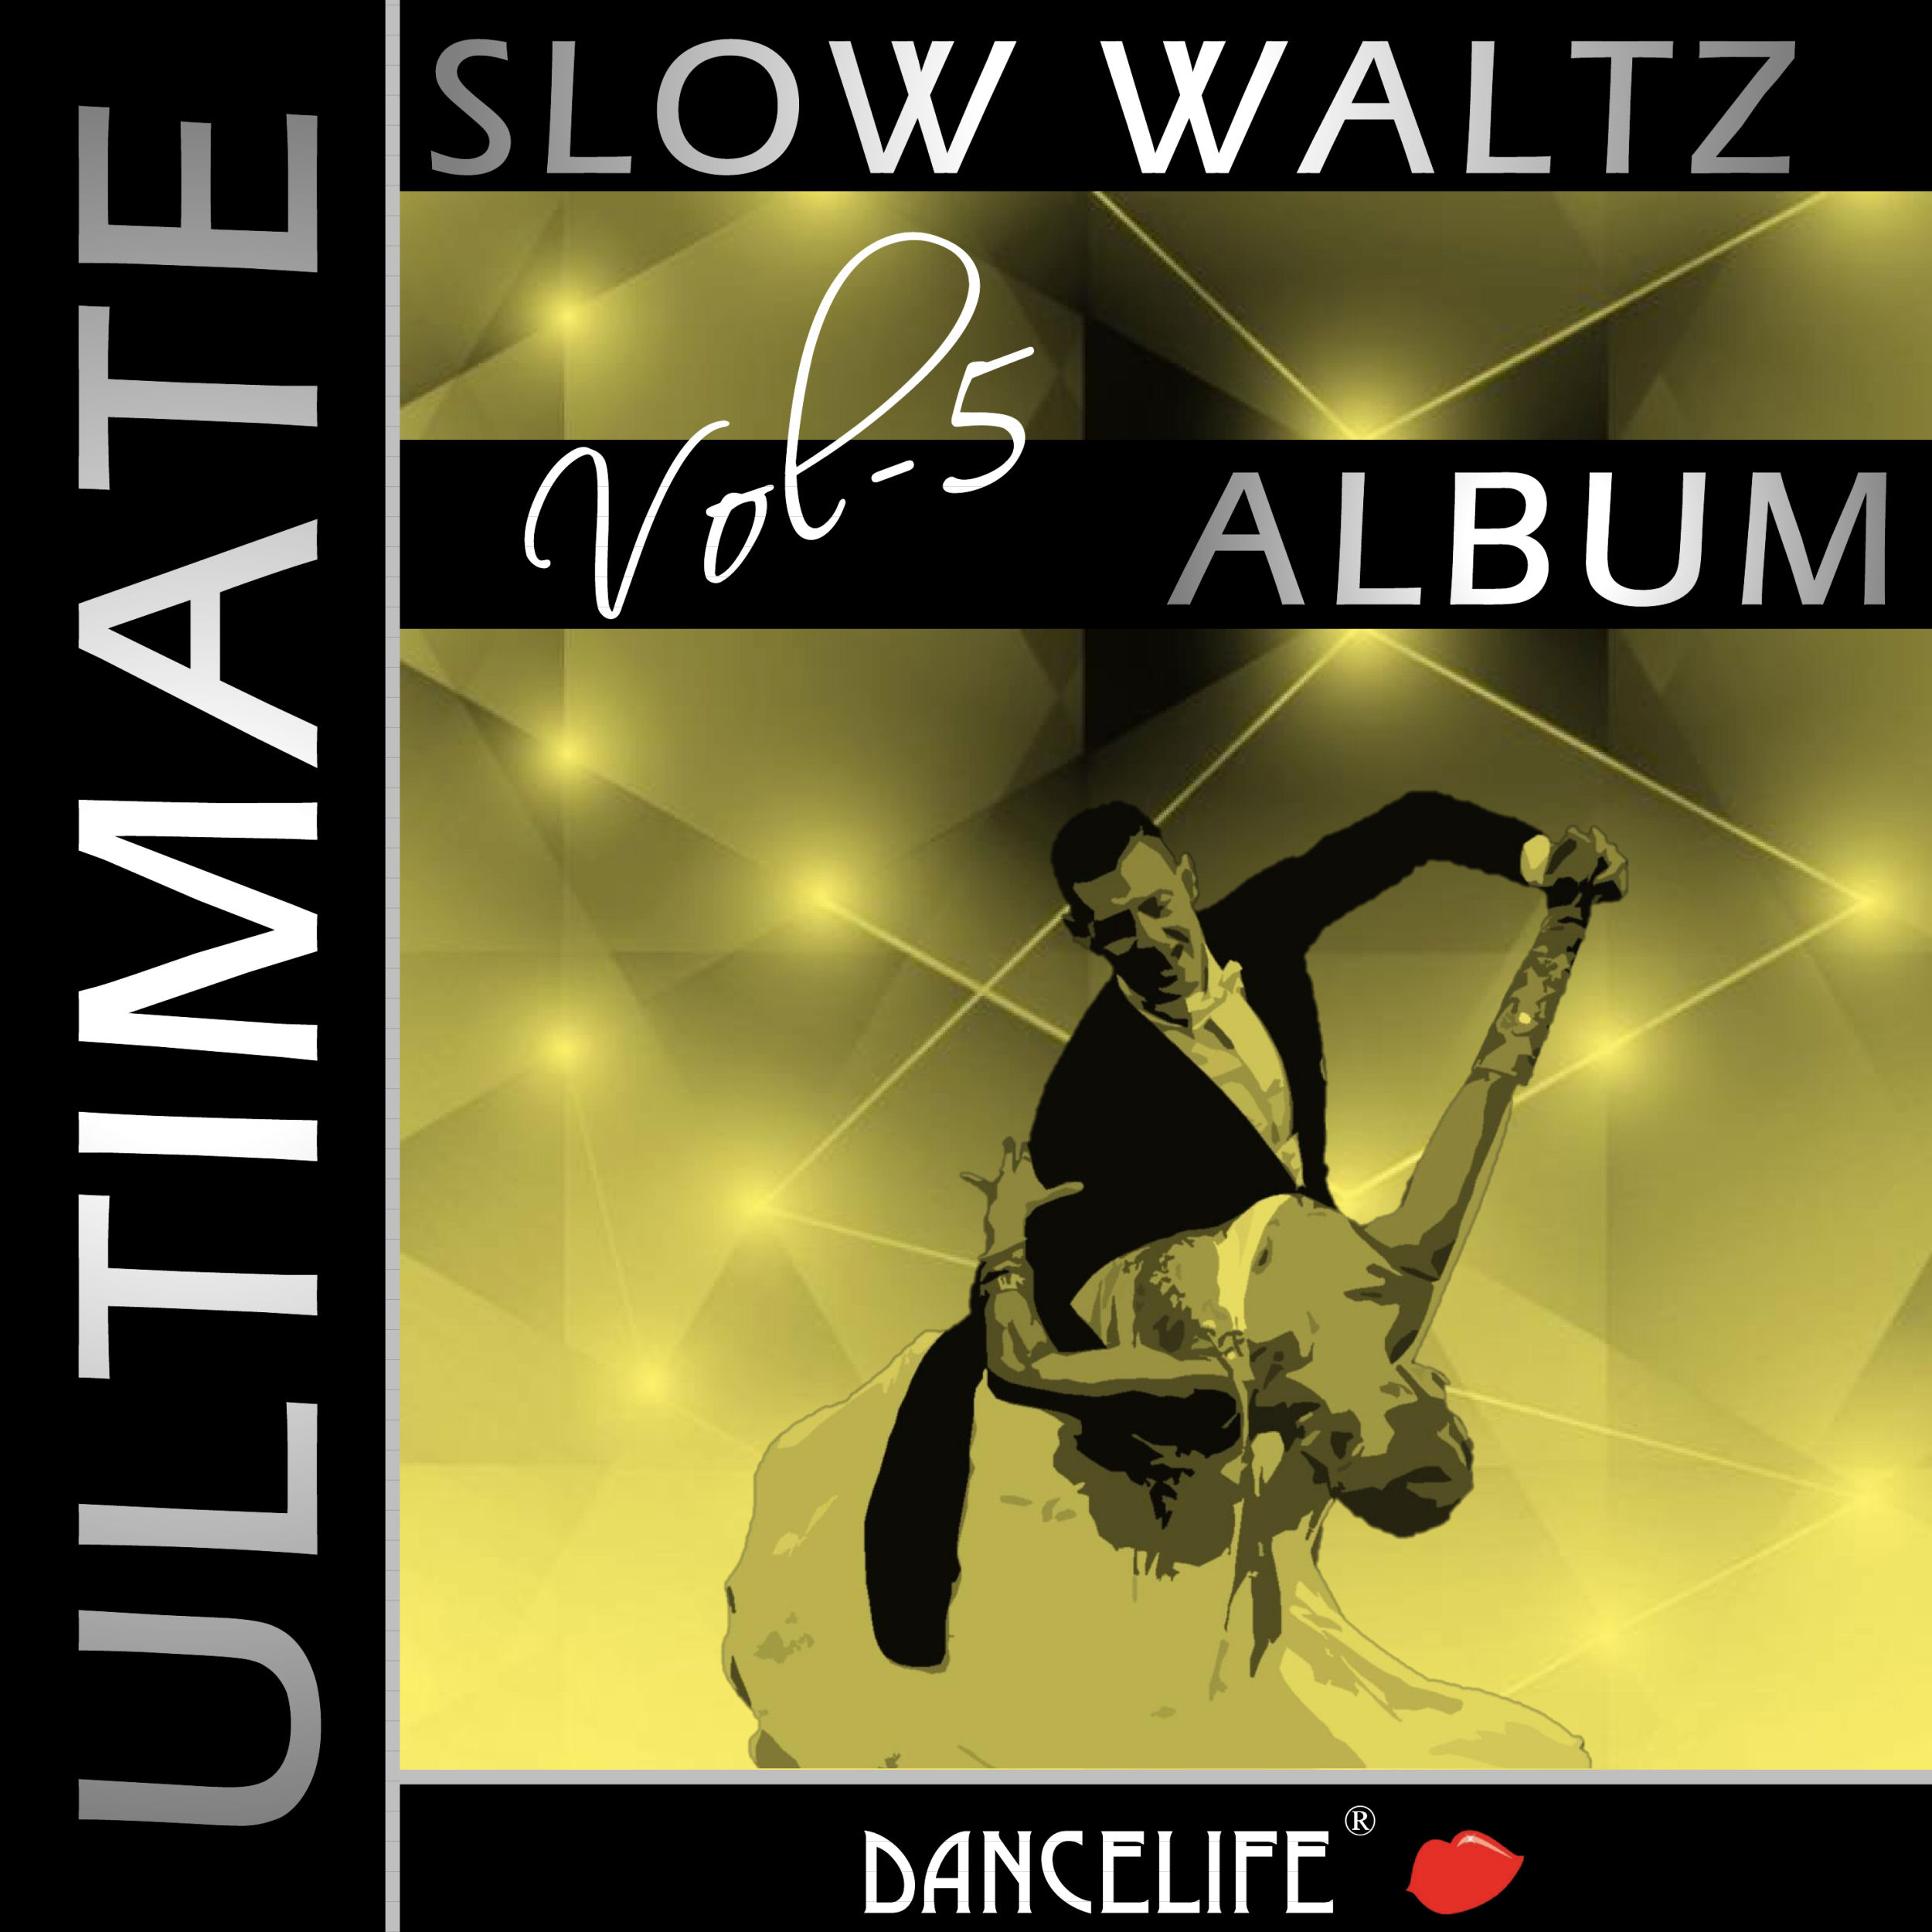 Dancelife presents: The Ultimate Slow Waltz Album, Vol. 5